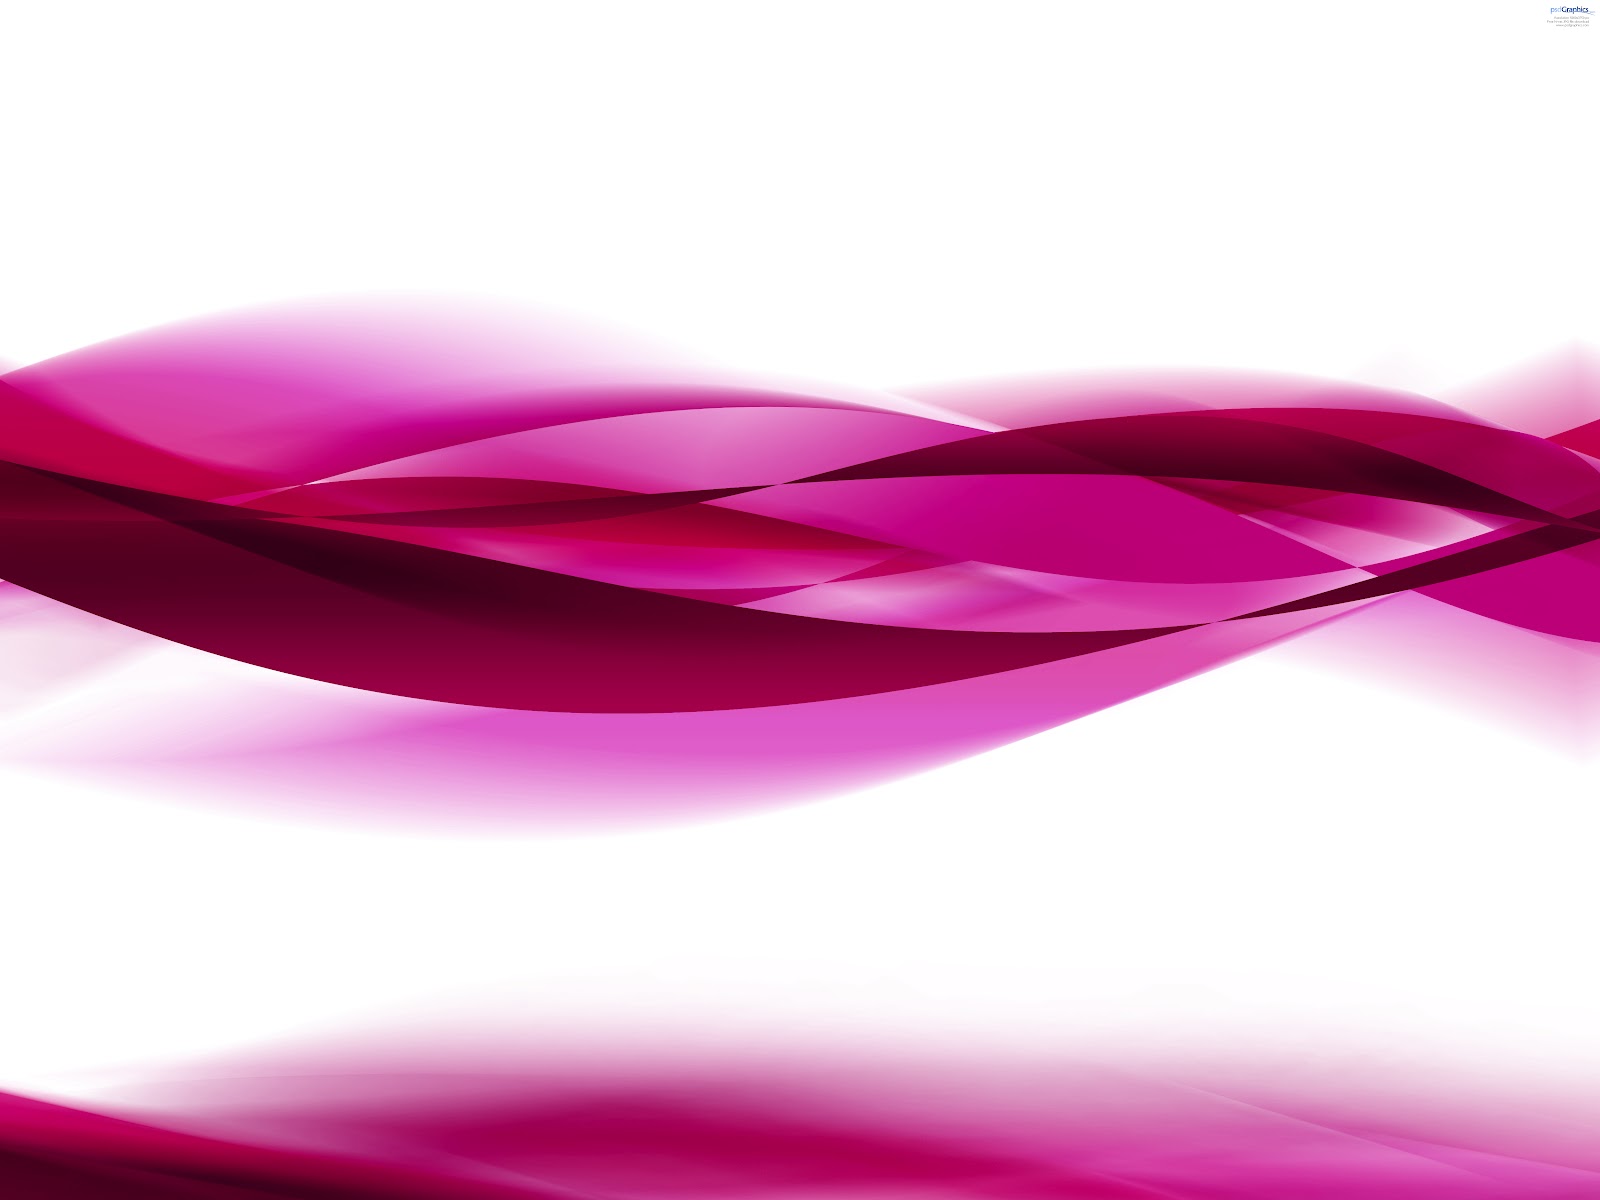 fondo de pantalla para photoshop,rosado,rojo,púrpura,violeta,pétalo